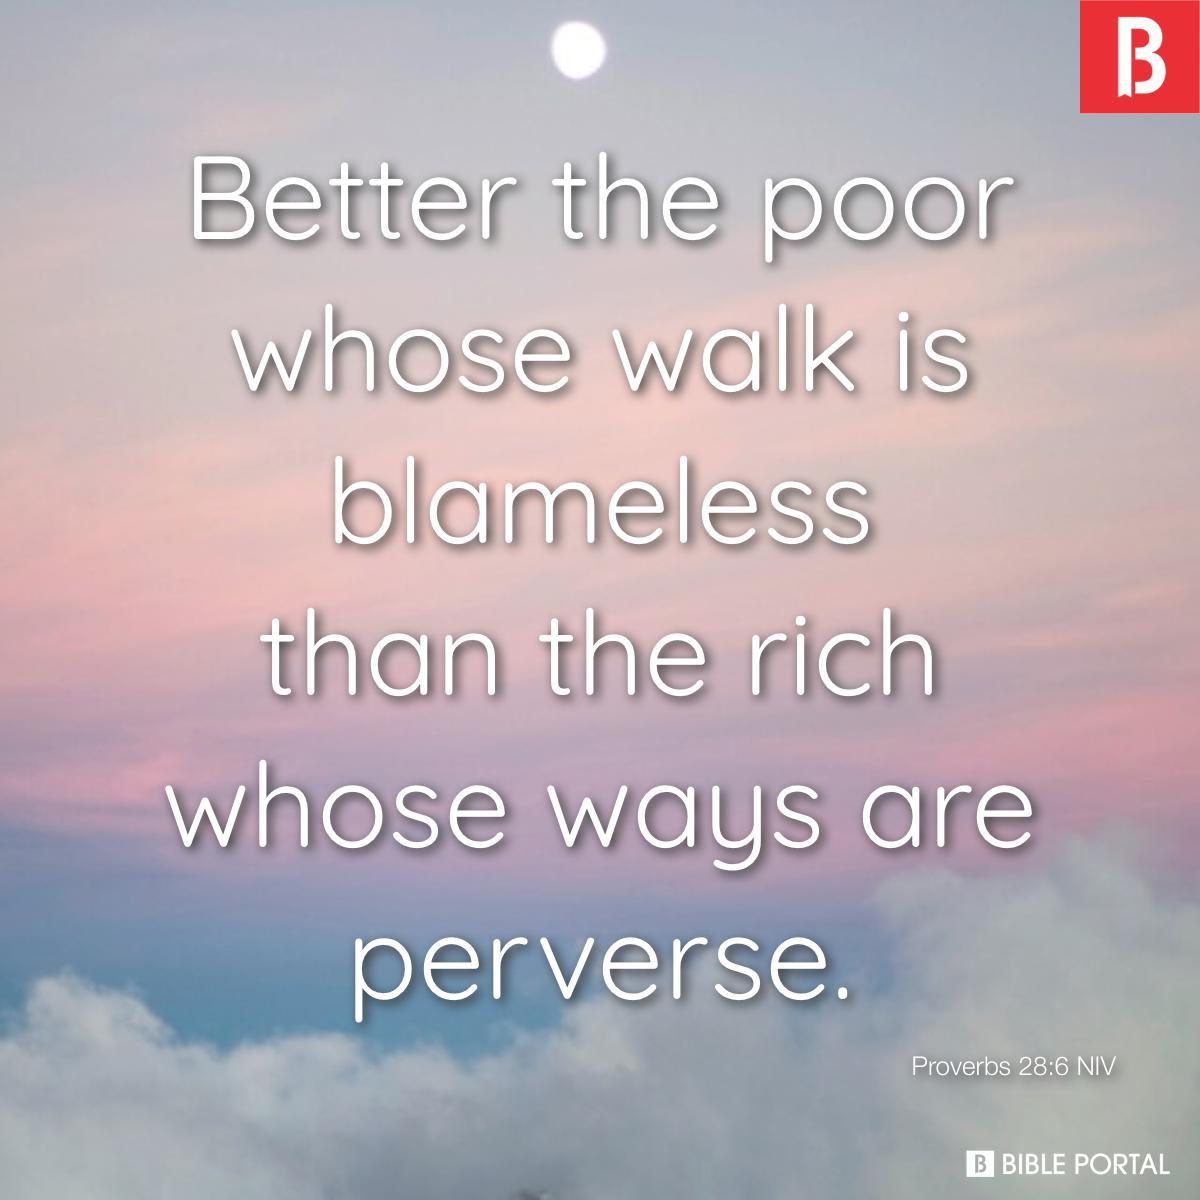 Proverbs 28:6